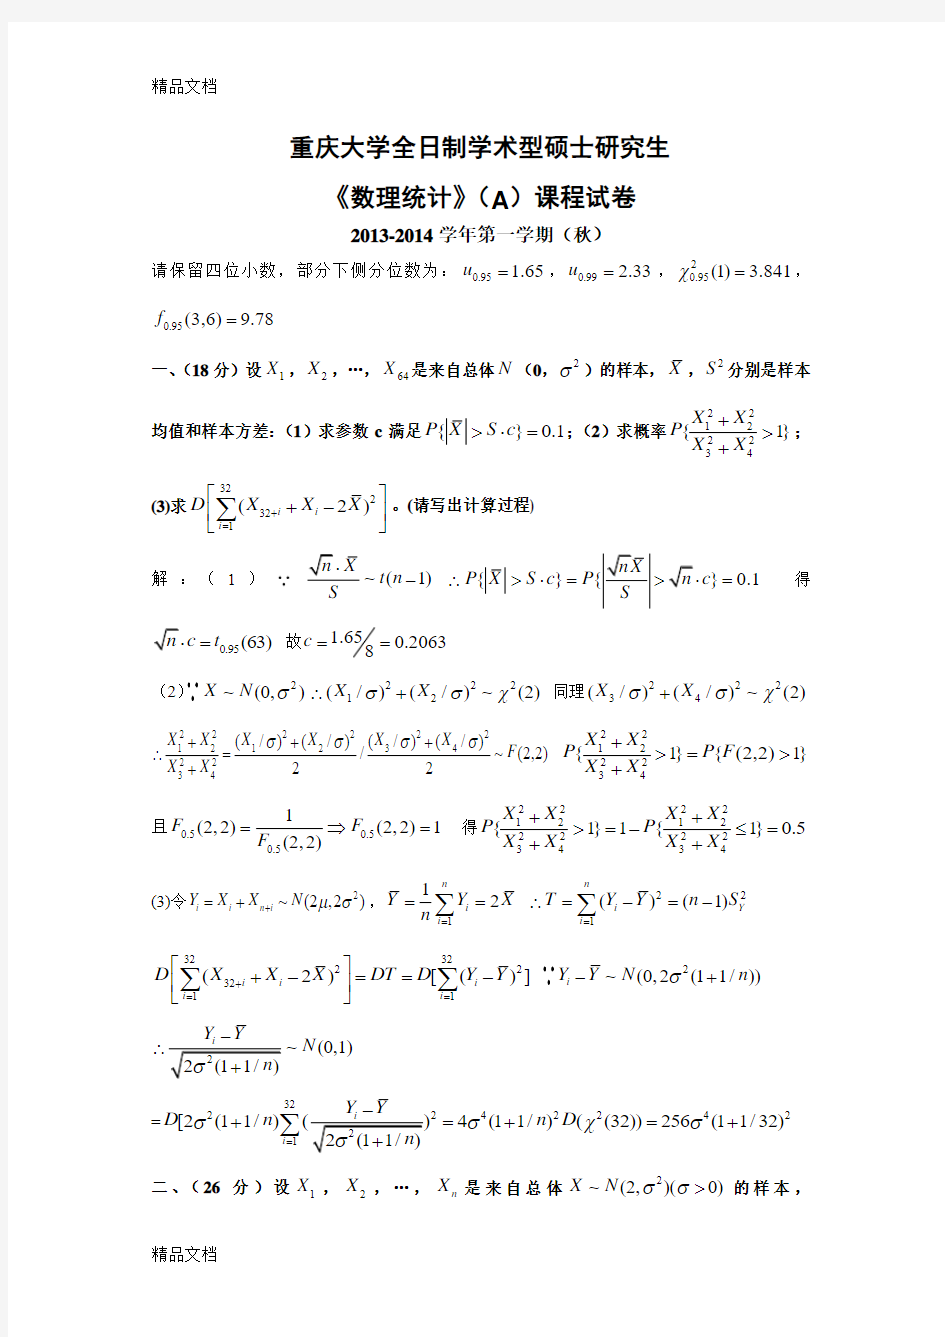 最新重庆大学-2014学年(秋)数理统计ab试题与答案